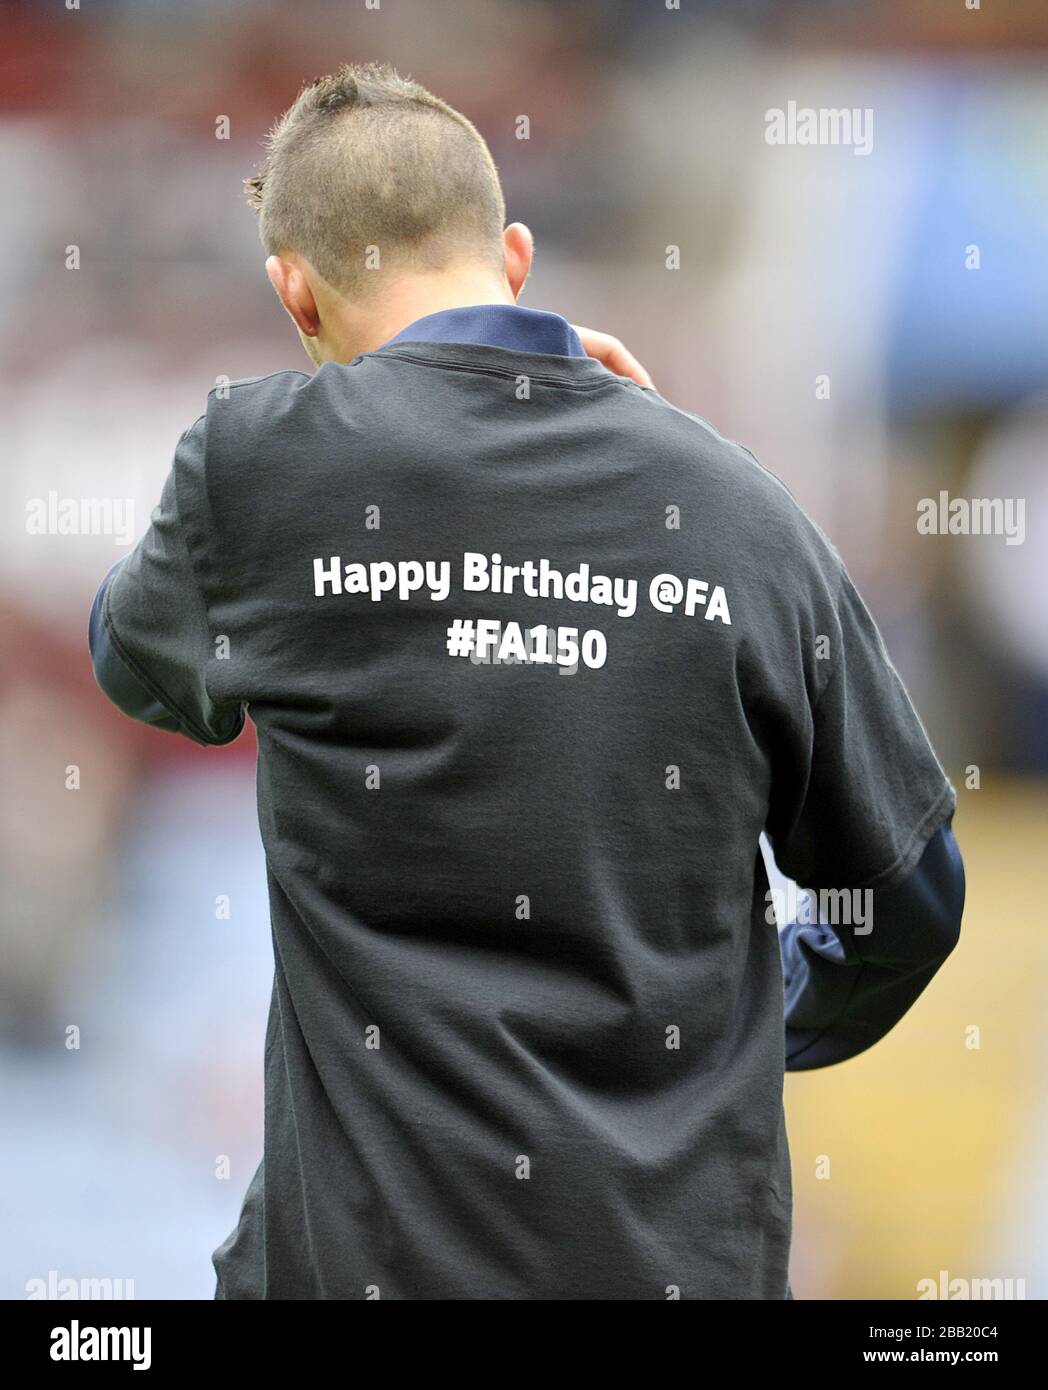 Un joueur de football porte une chemise avec « Happy Birthday @FA #FA150 » sur le dos pour célébrer le 150ème anniversaire de la FA Banque D'Images